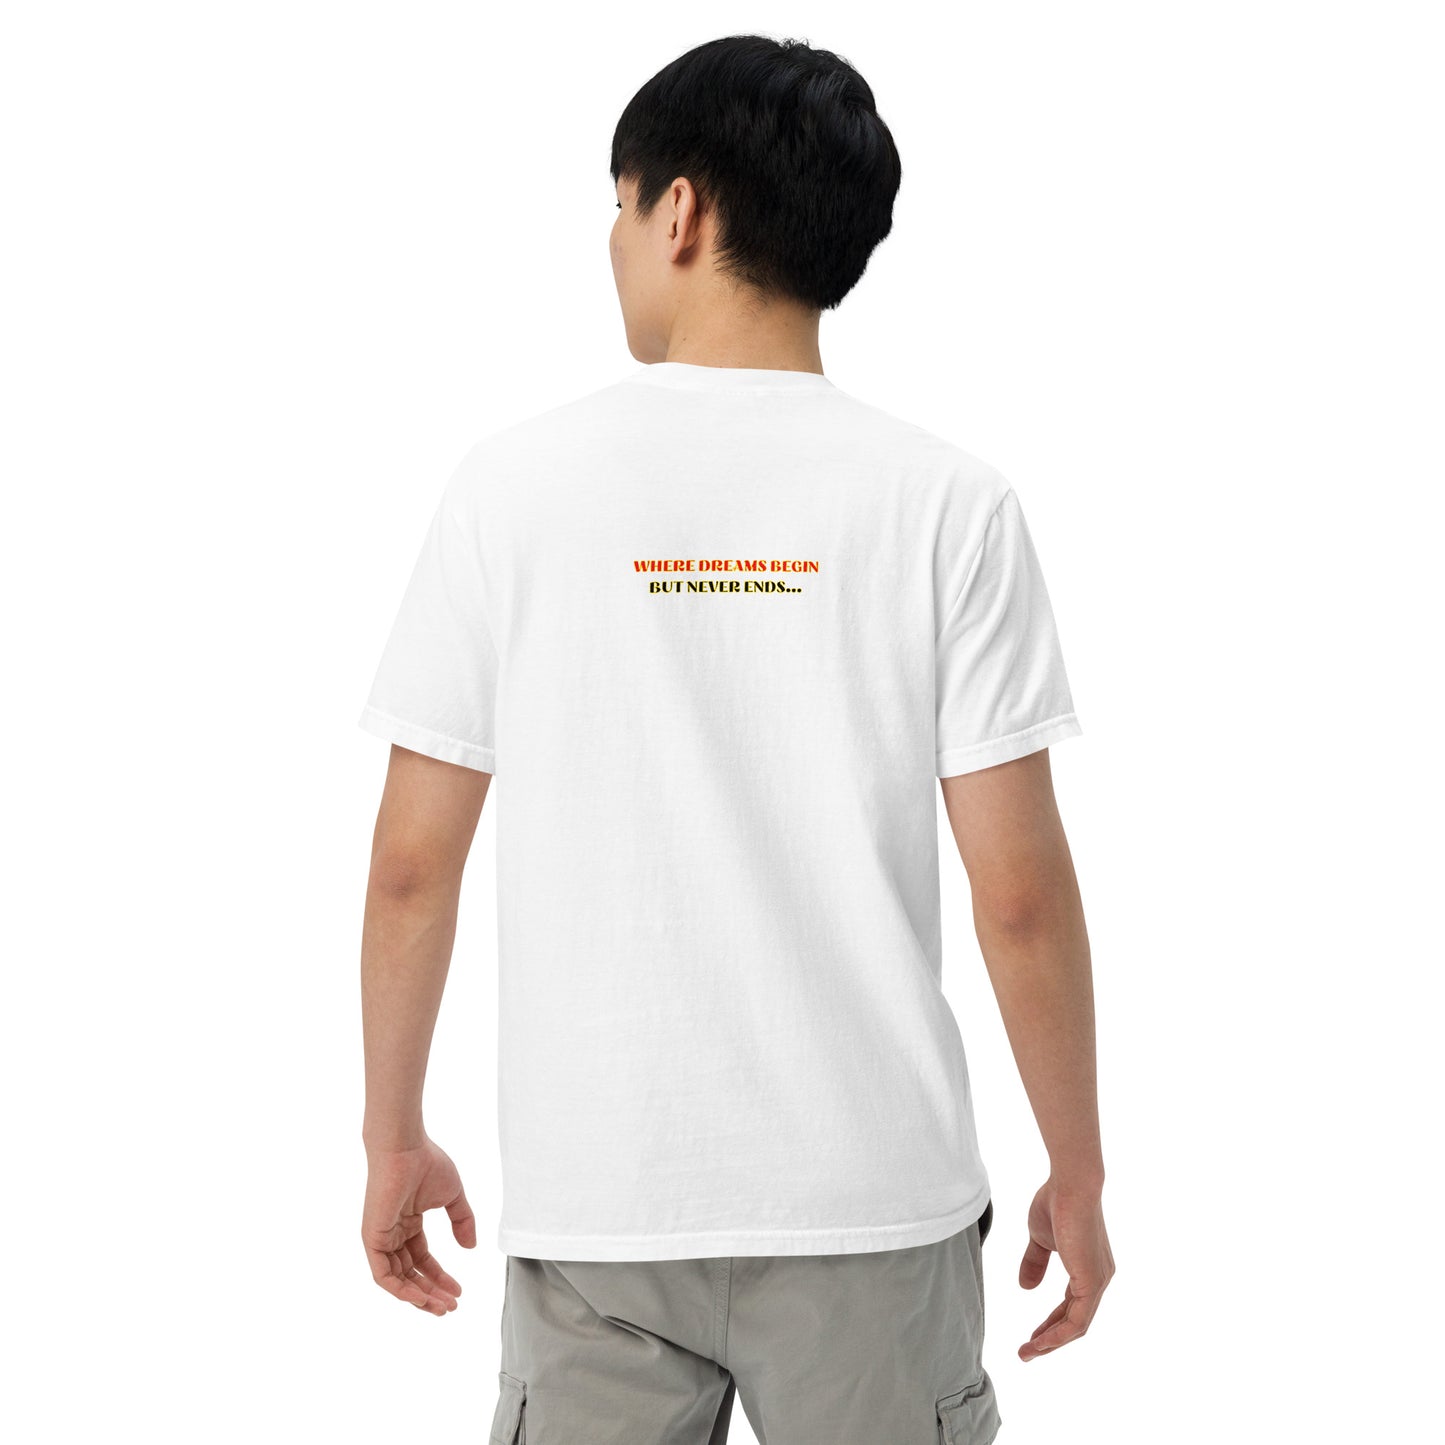 Unisex garment-dyed heavyweight t-shirt